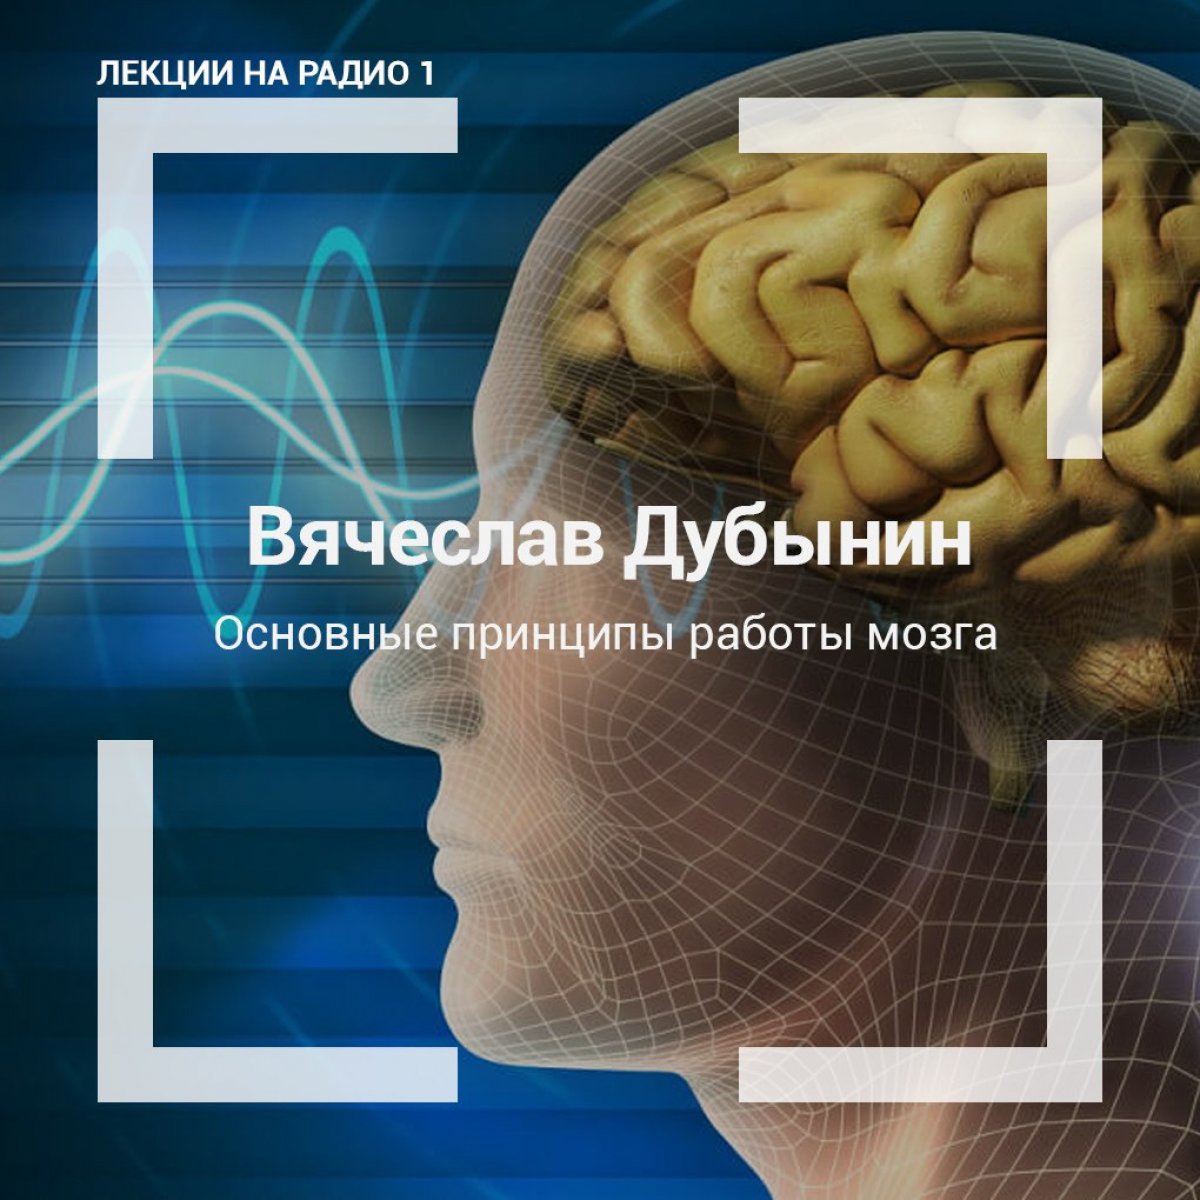 профессор биологического факультета МГУ Вячеслав Дубынин выступает на с лекцией: «Основные принципы работы мозга»: http://radio1.news